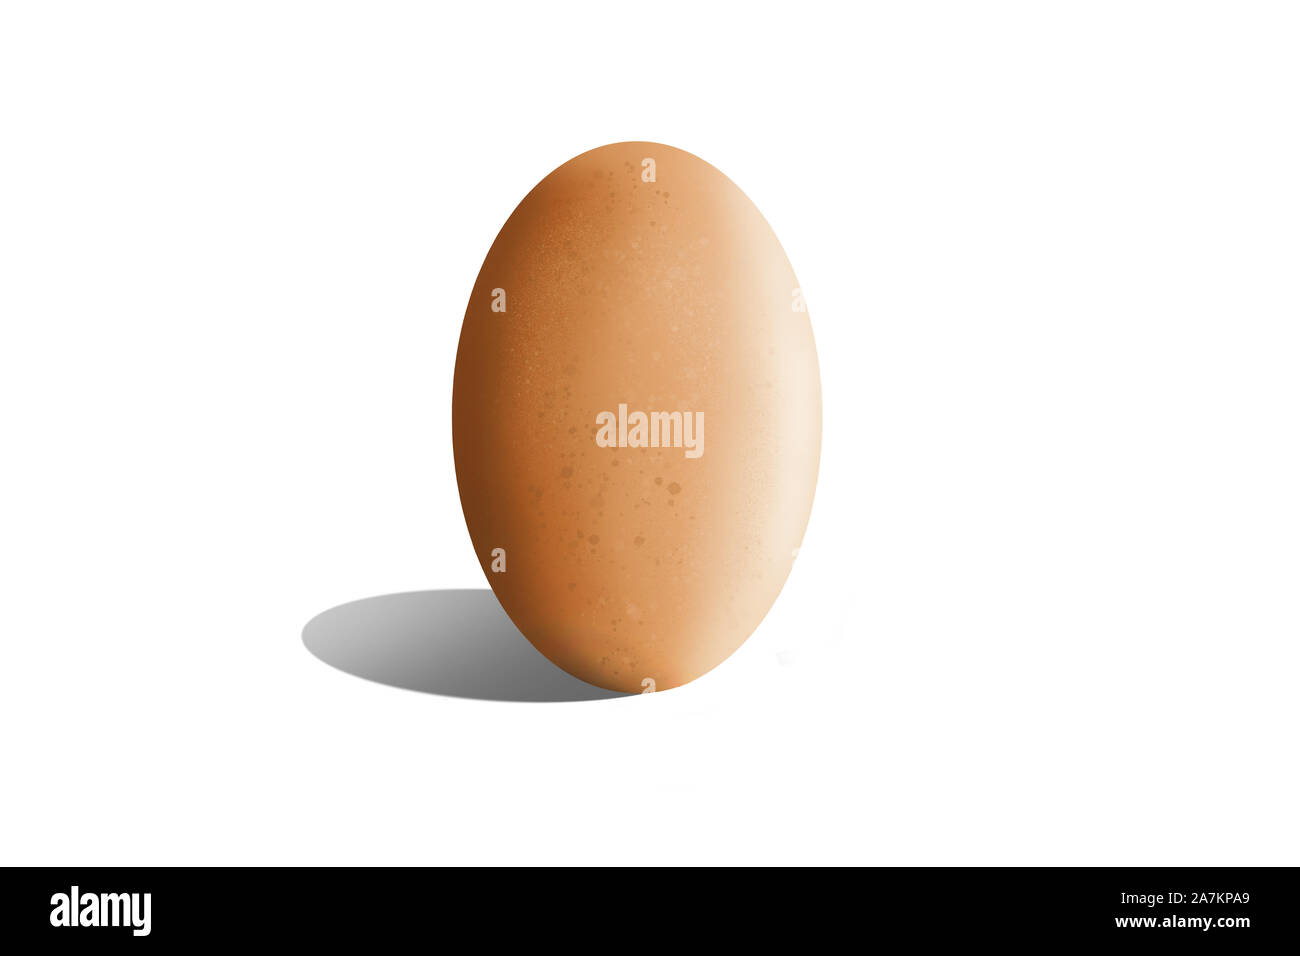 Illustrazione di un uovo di colore marrone con sfondo bianco. Foto Stock